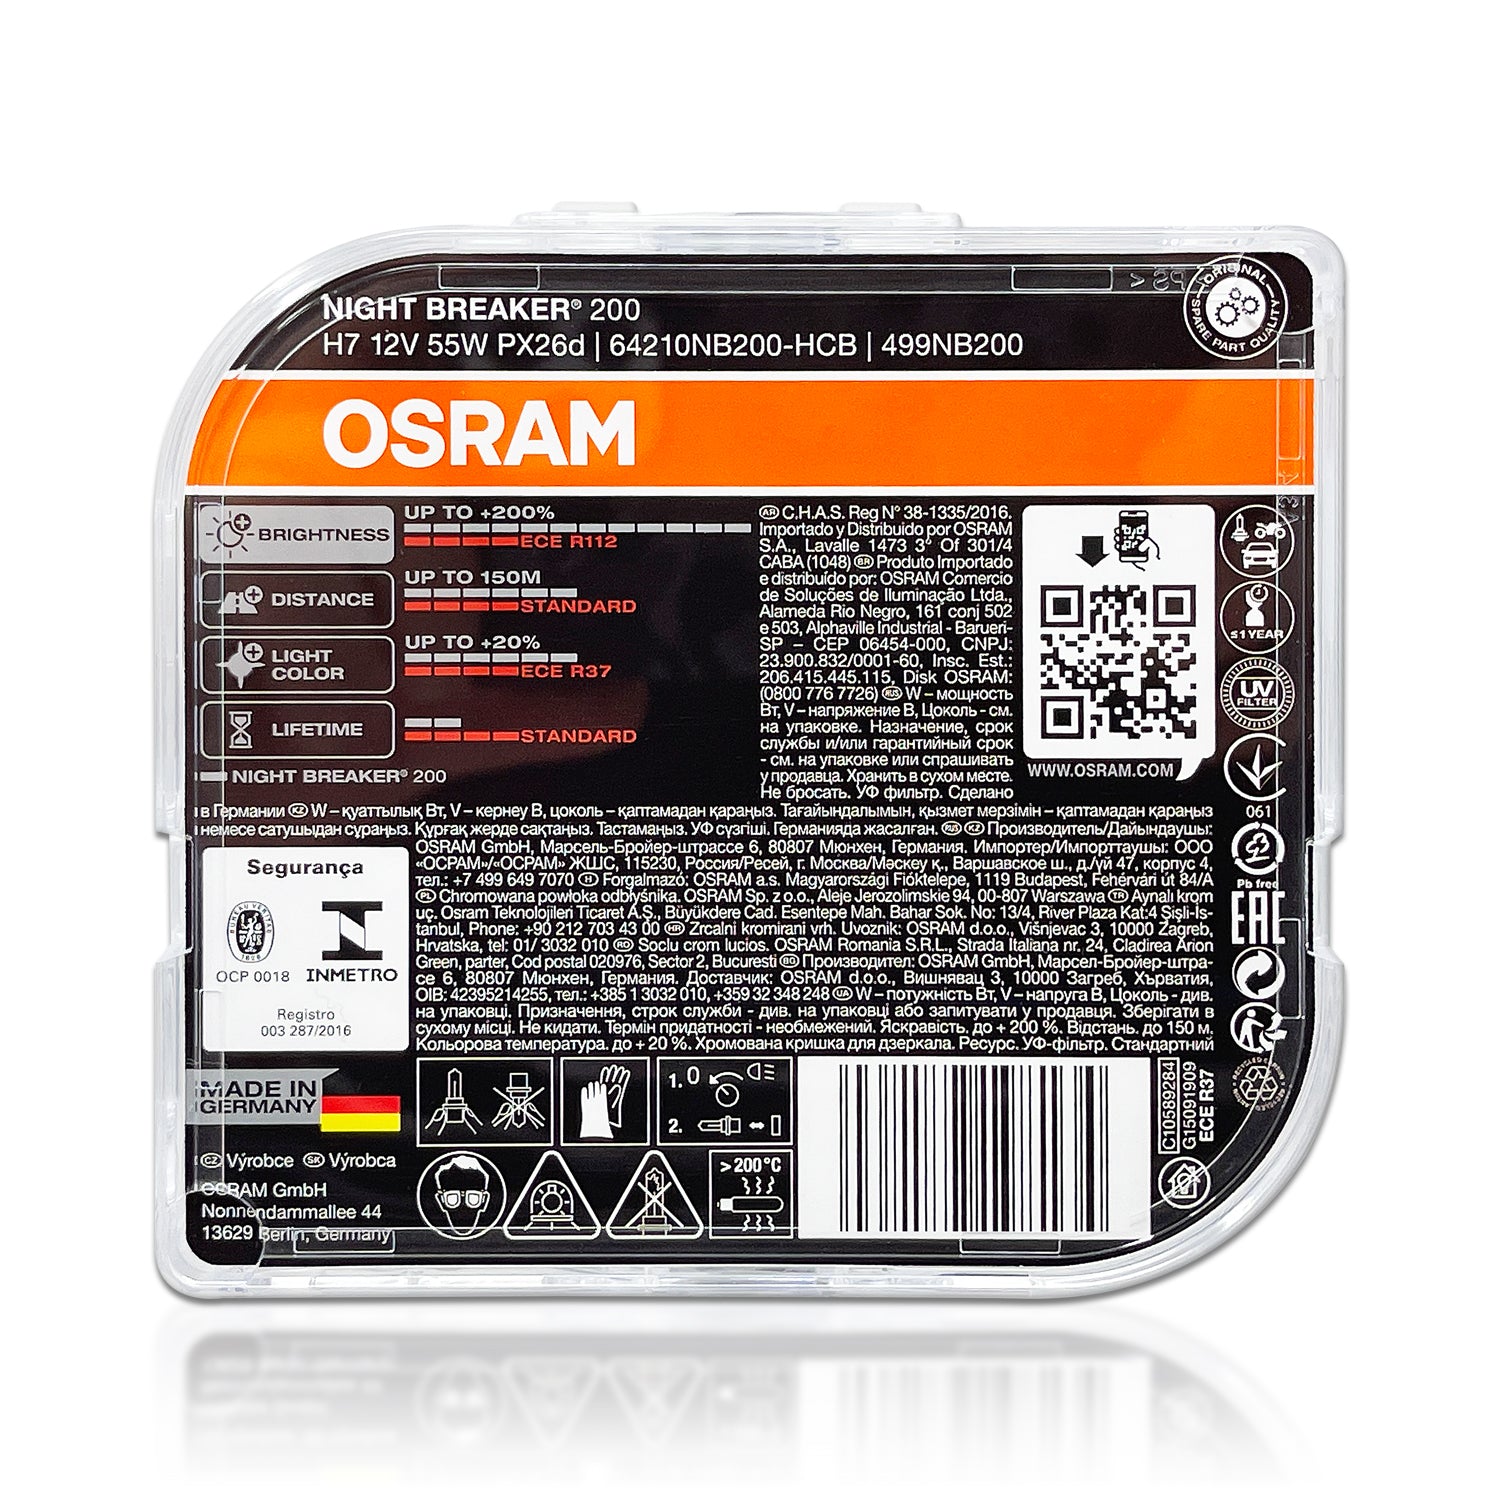 OSRAM NIGHT BREAKER +200% vs OSRAM Original 